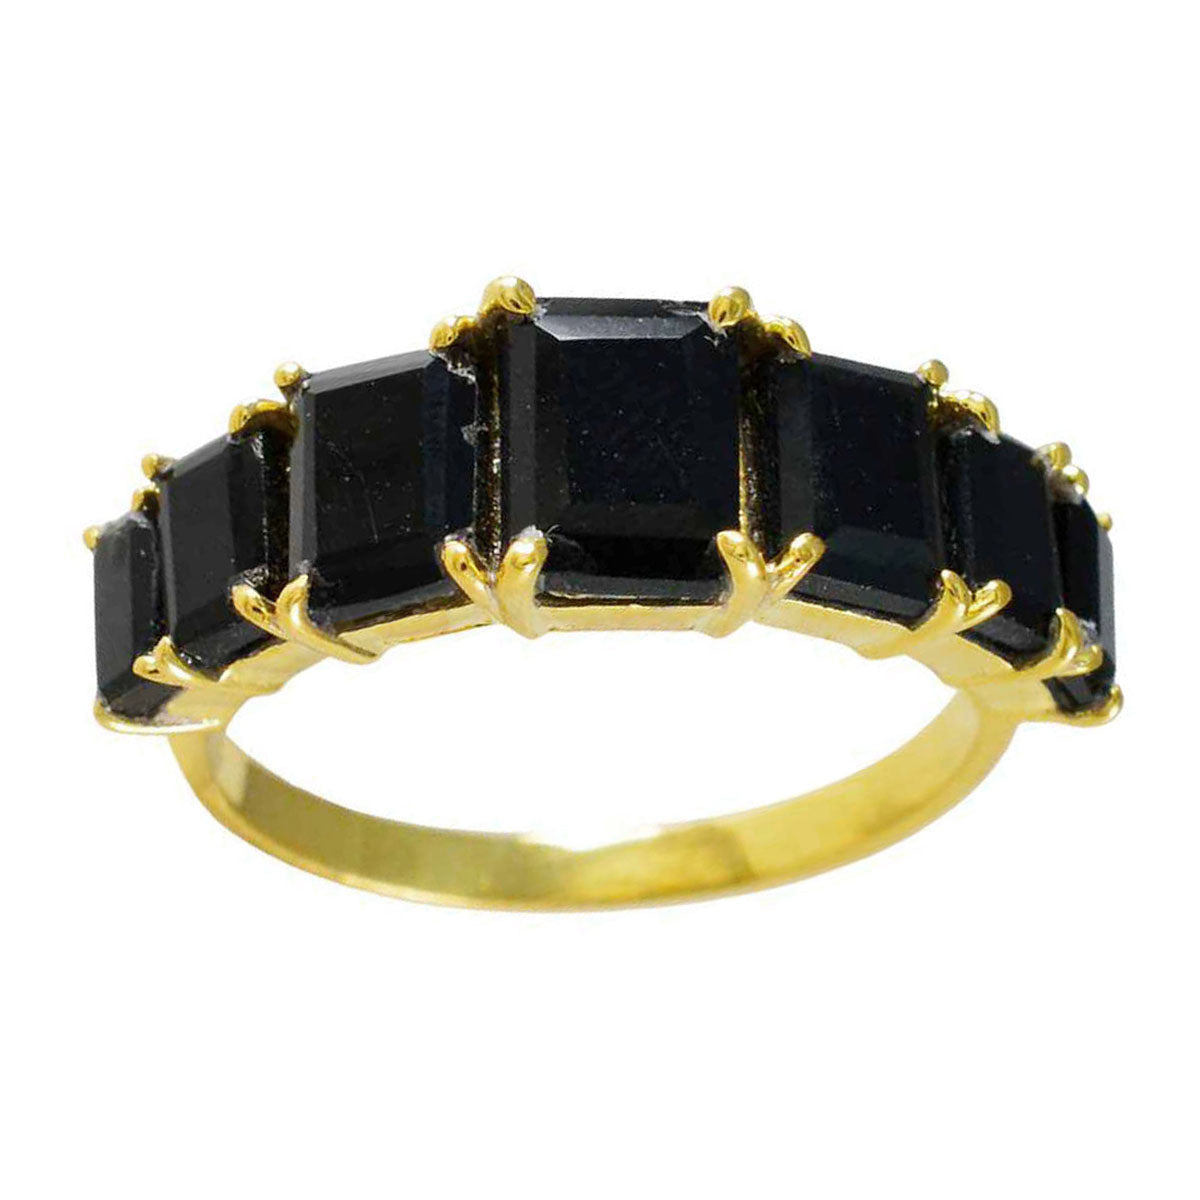 Riyo Exporteur Zilveren Ring Met Geel Goud Plating Zwarte Onyx Steen Achthoekige Vorm Prong Setting Mode-sieraden Black Friday Ring